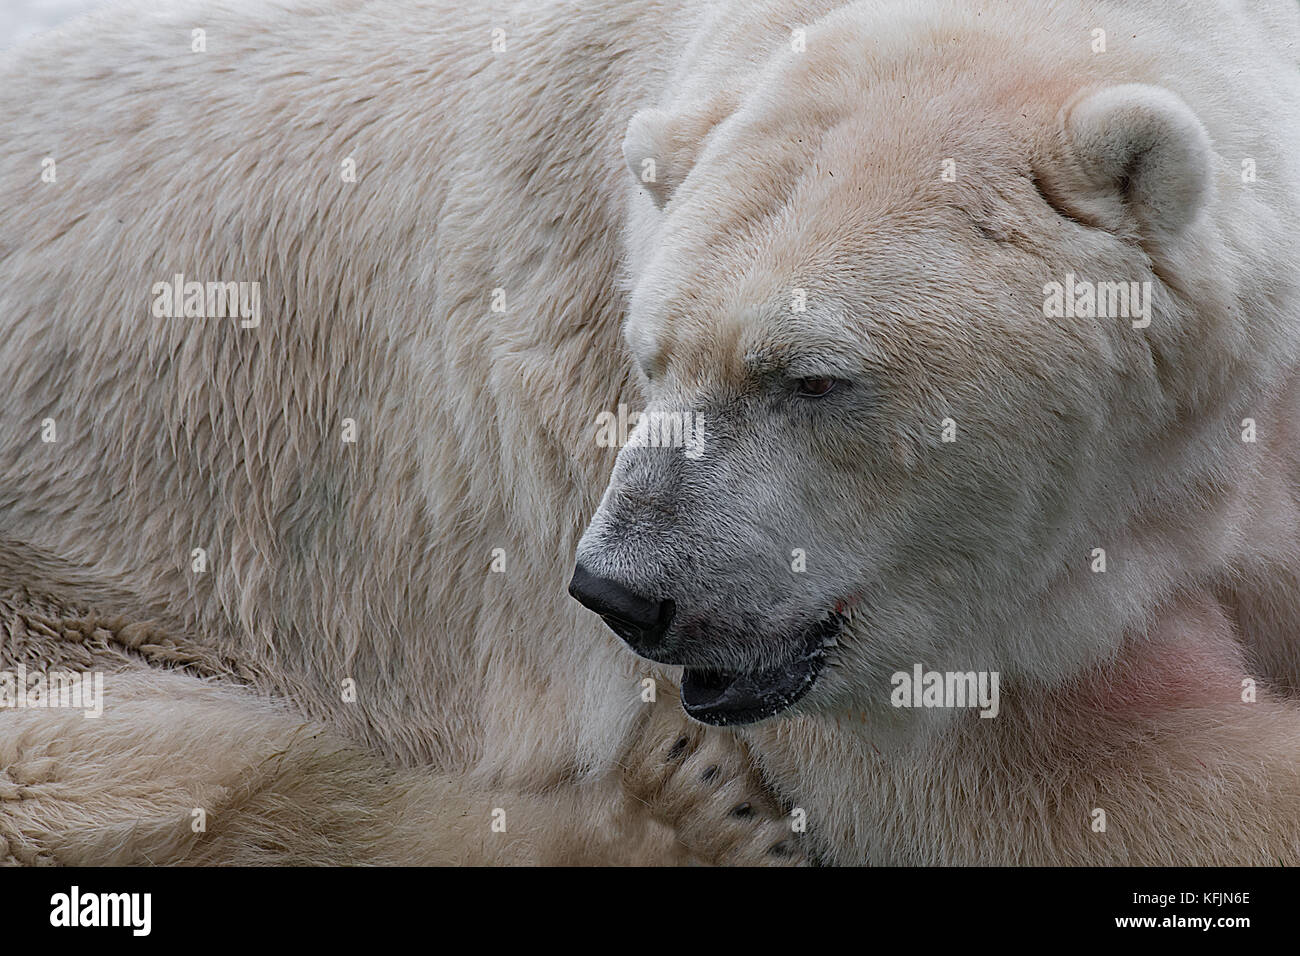 A very close photograph of a polar bear Stock Photo